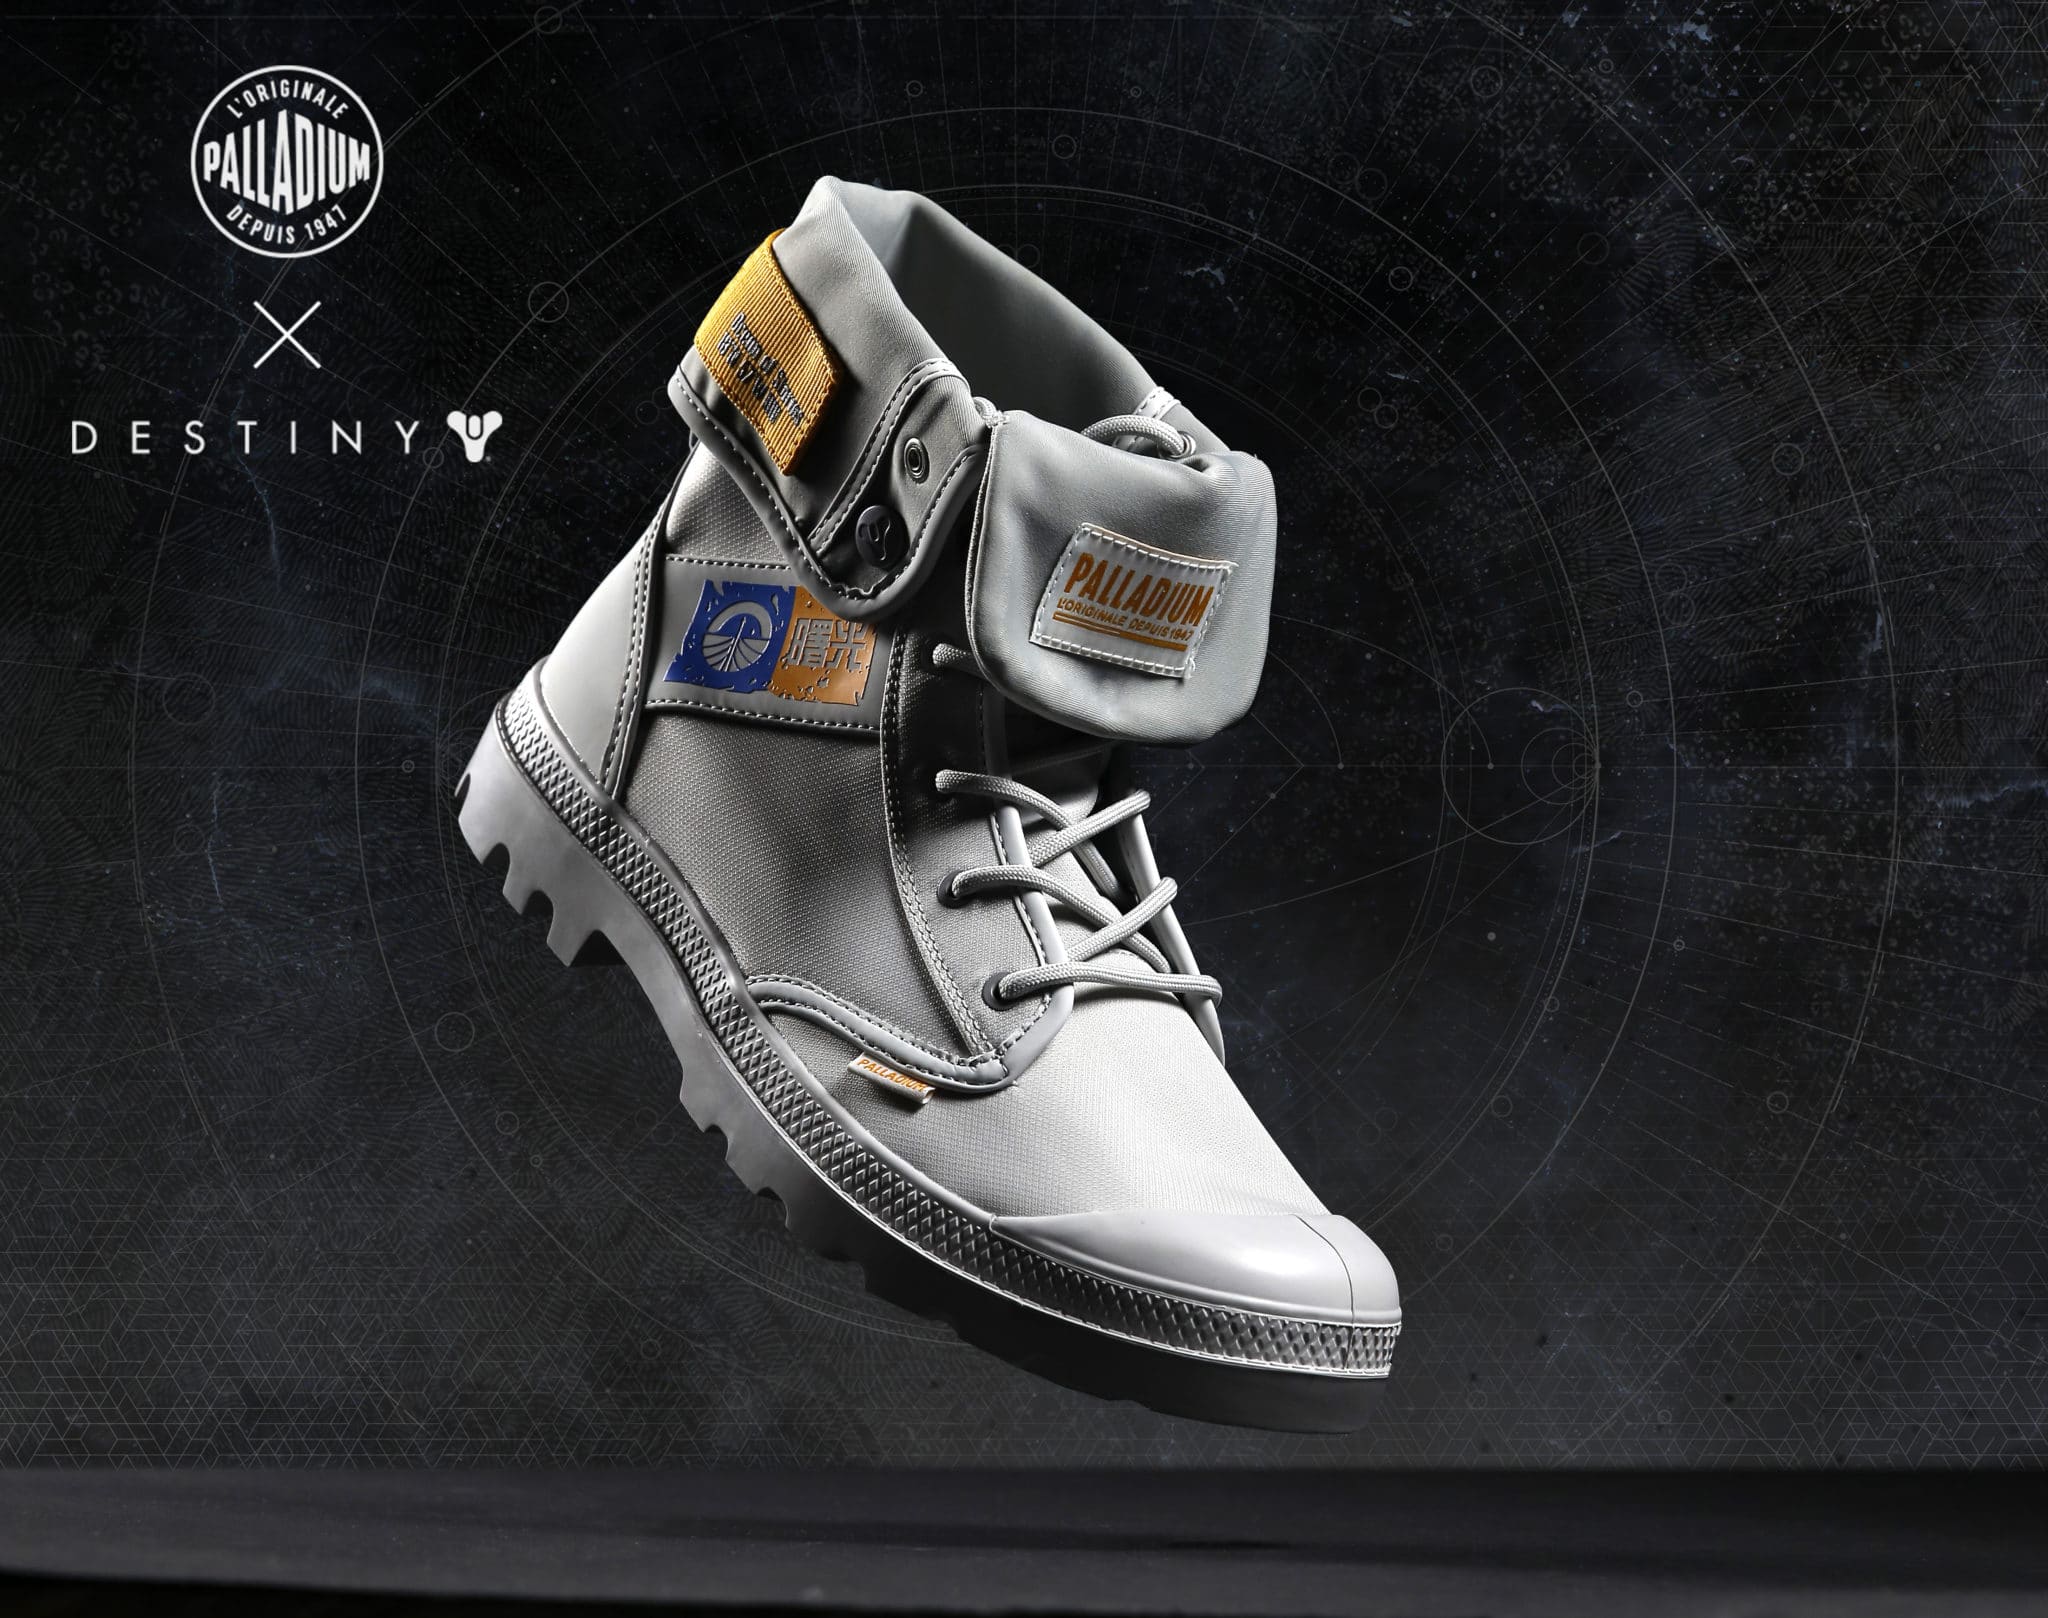 Destiny 2 shoes